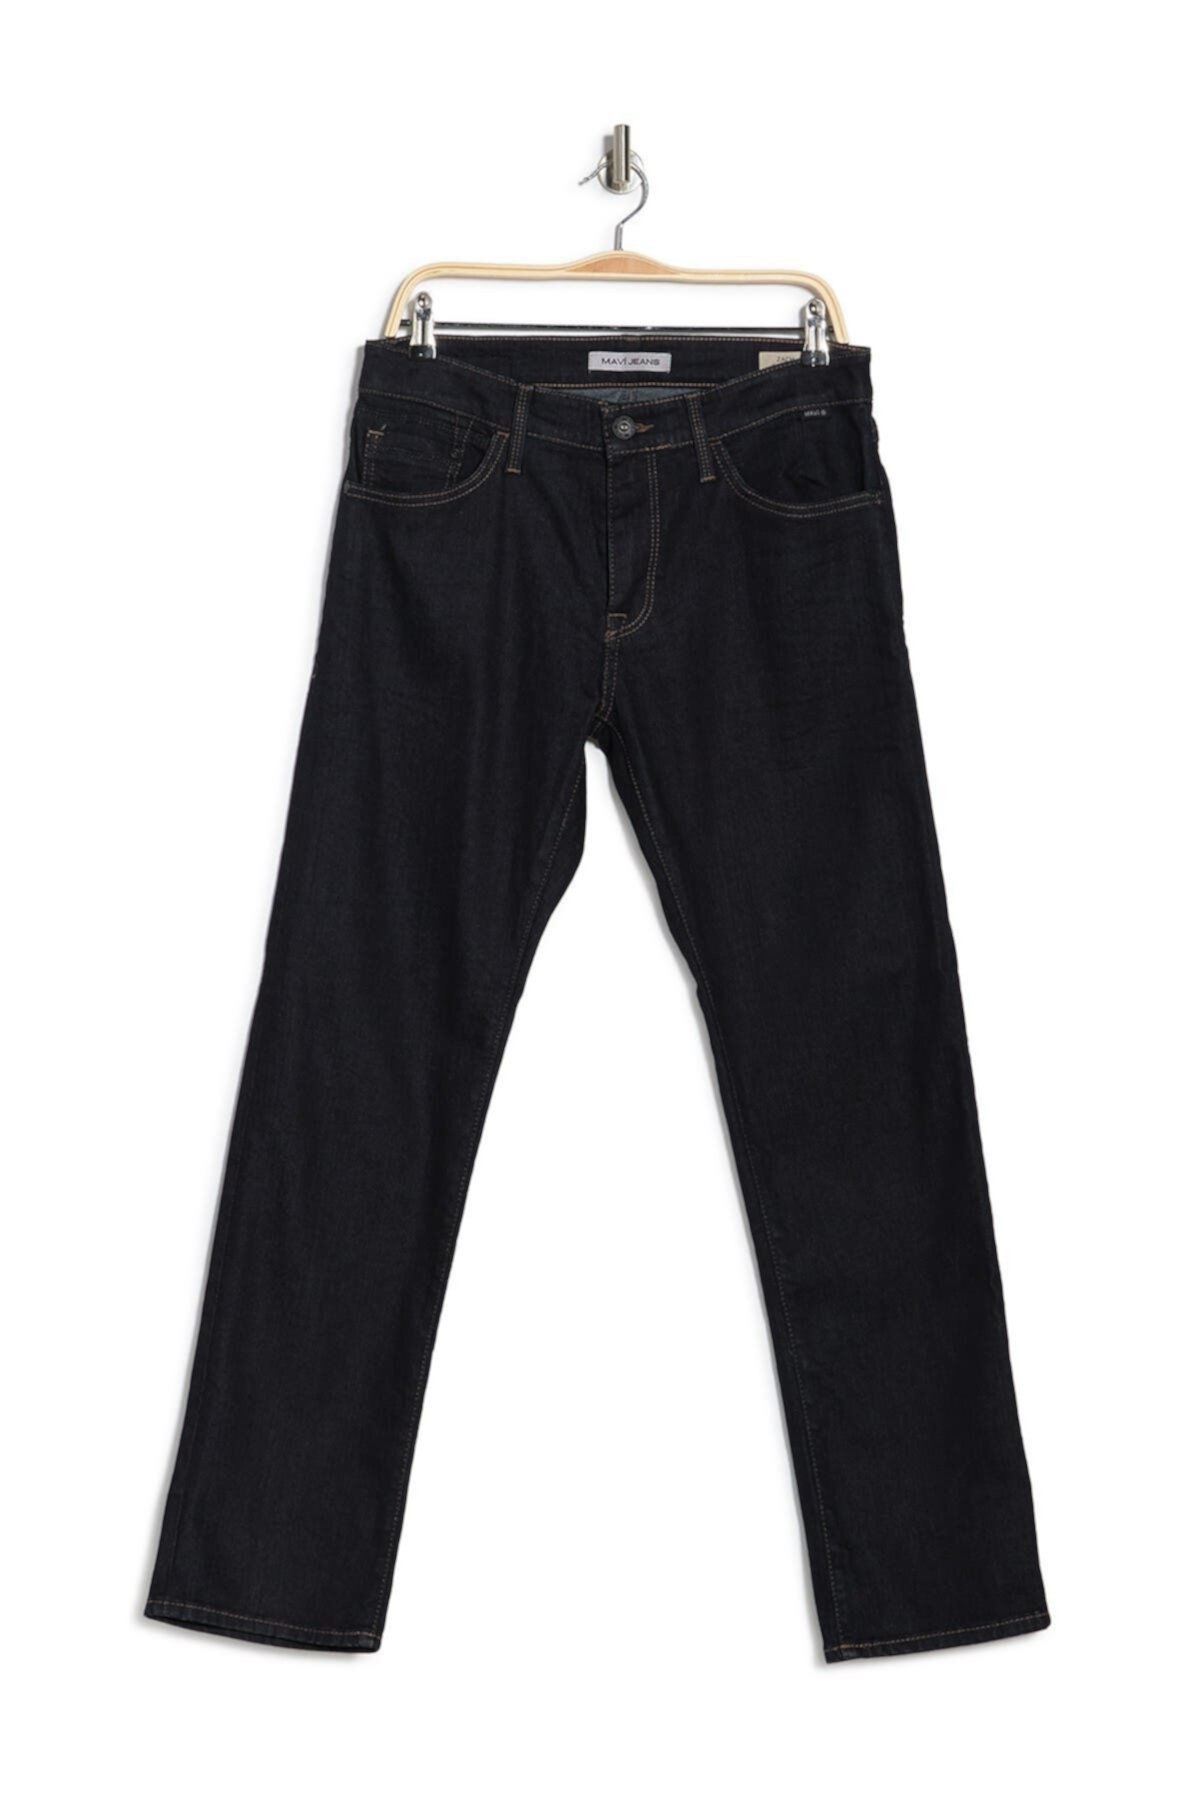 Прямые джинсы Zach - 30–34 дюйма по внутреннему шву Mavi